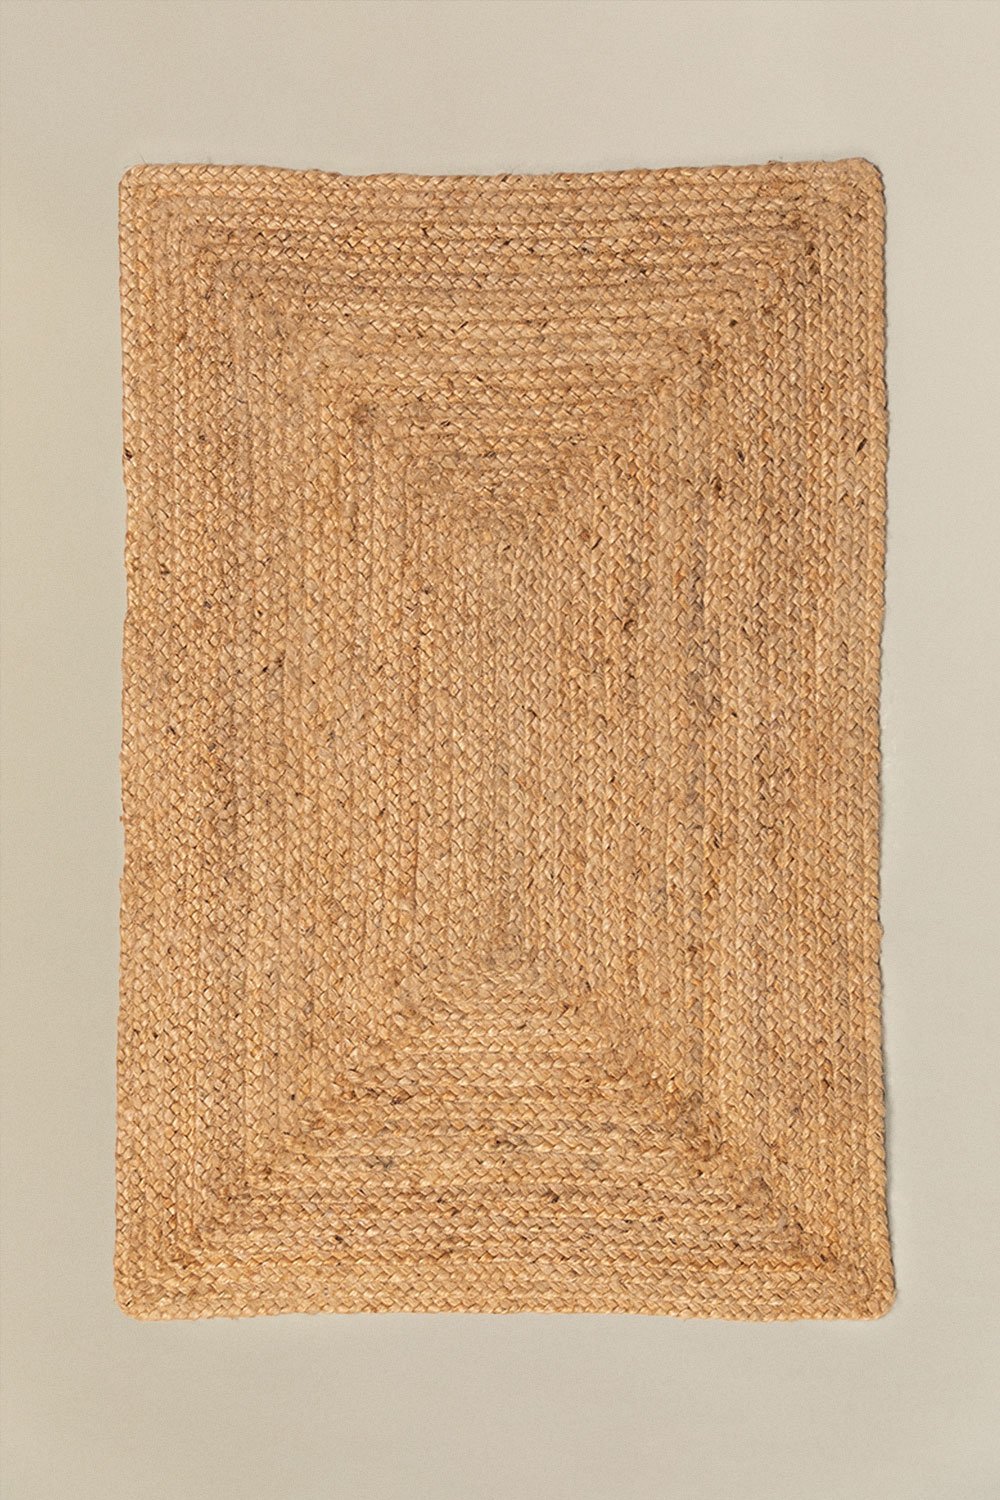 Zerbino in Juta Naturale (90x60 cm) Airo, immagine della galleria 1